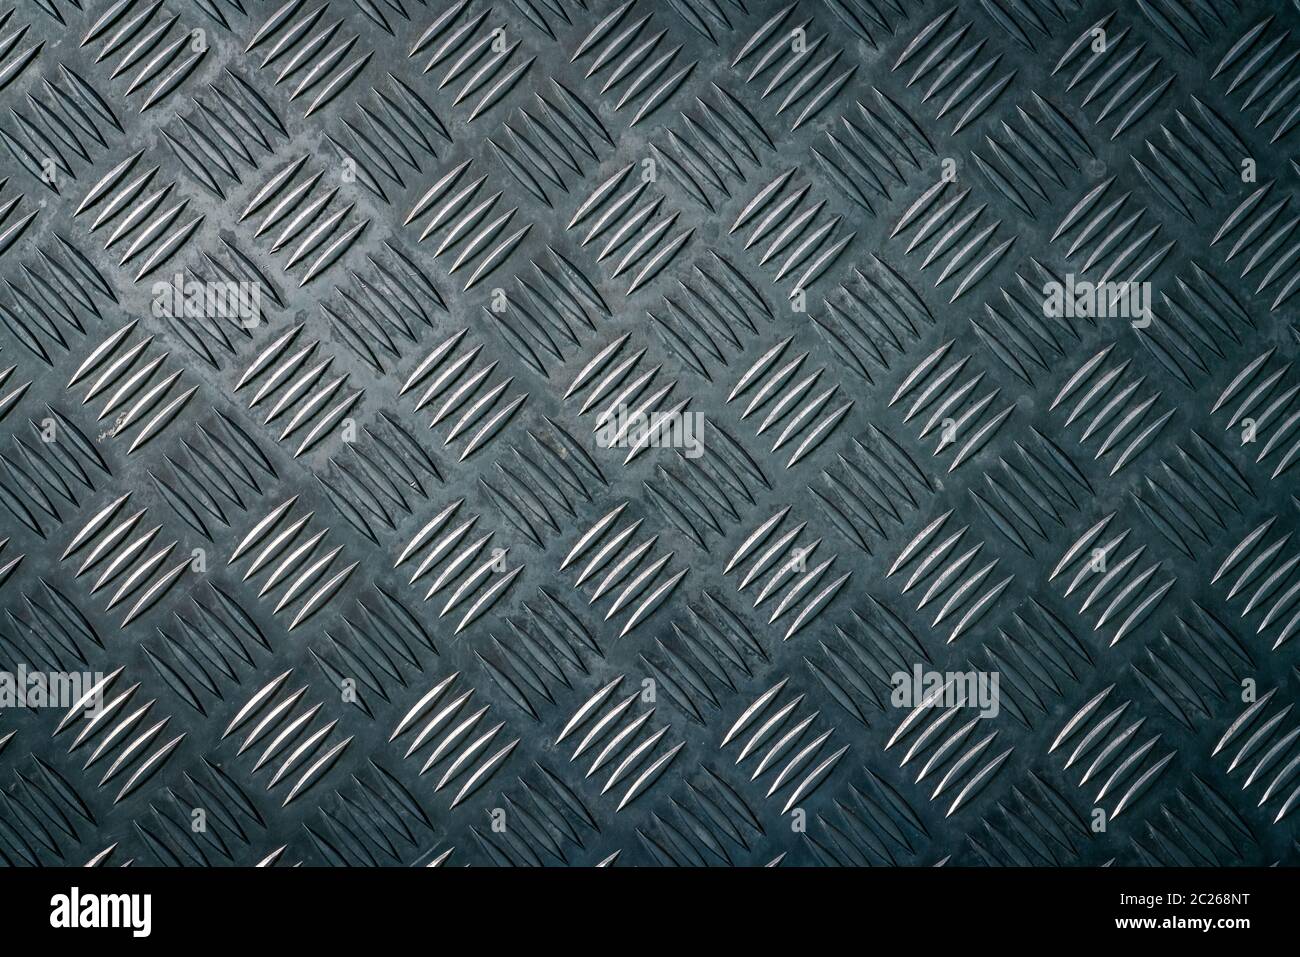 Metal Industriel checker plate. Metal checker plate texture background. Pour checkerplate métal anti skid. Feuille de métal en relief-de-chaussée. Bump argent grou Banque D'Images